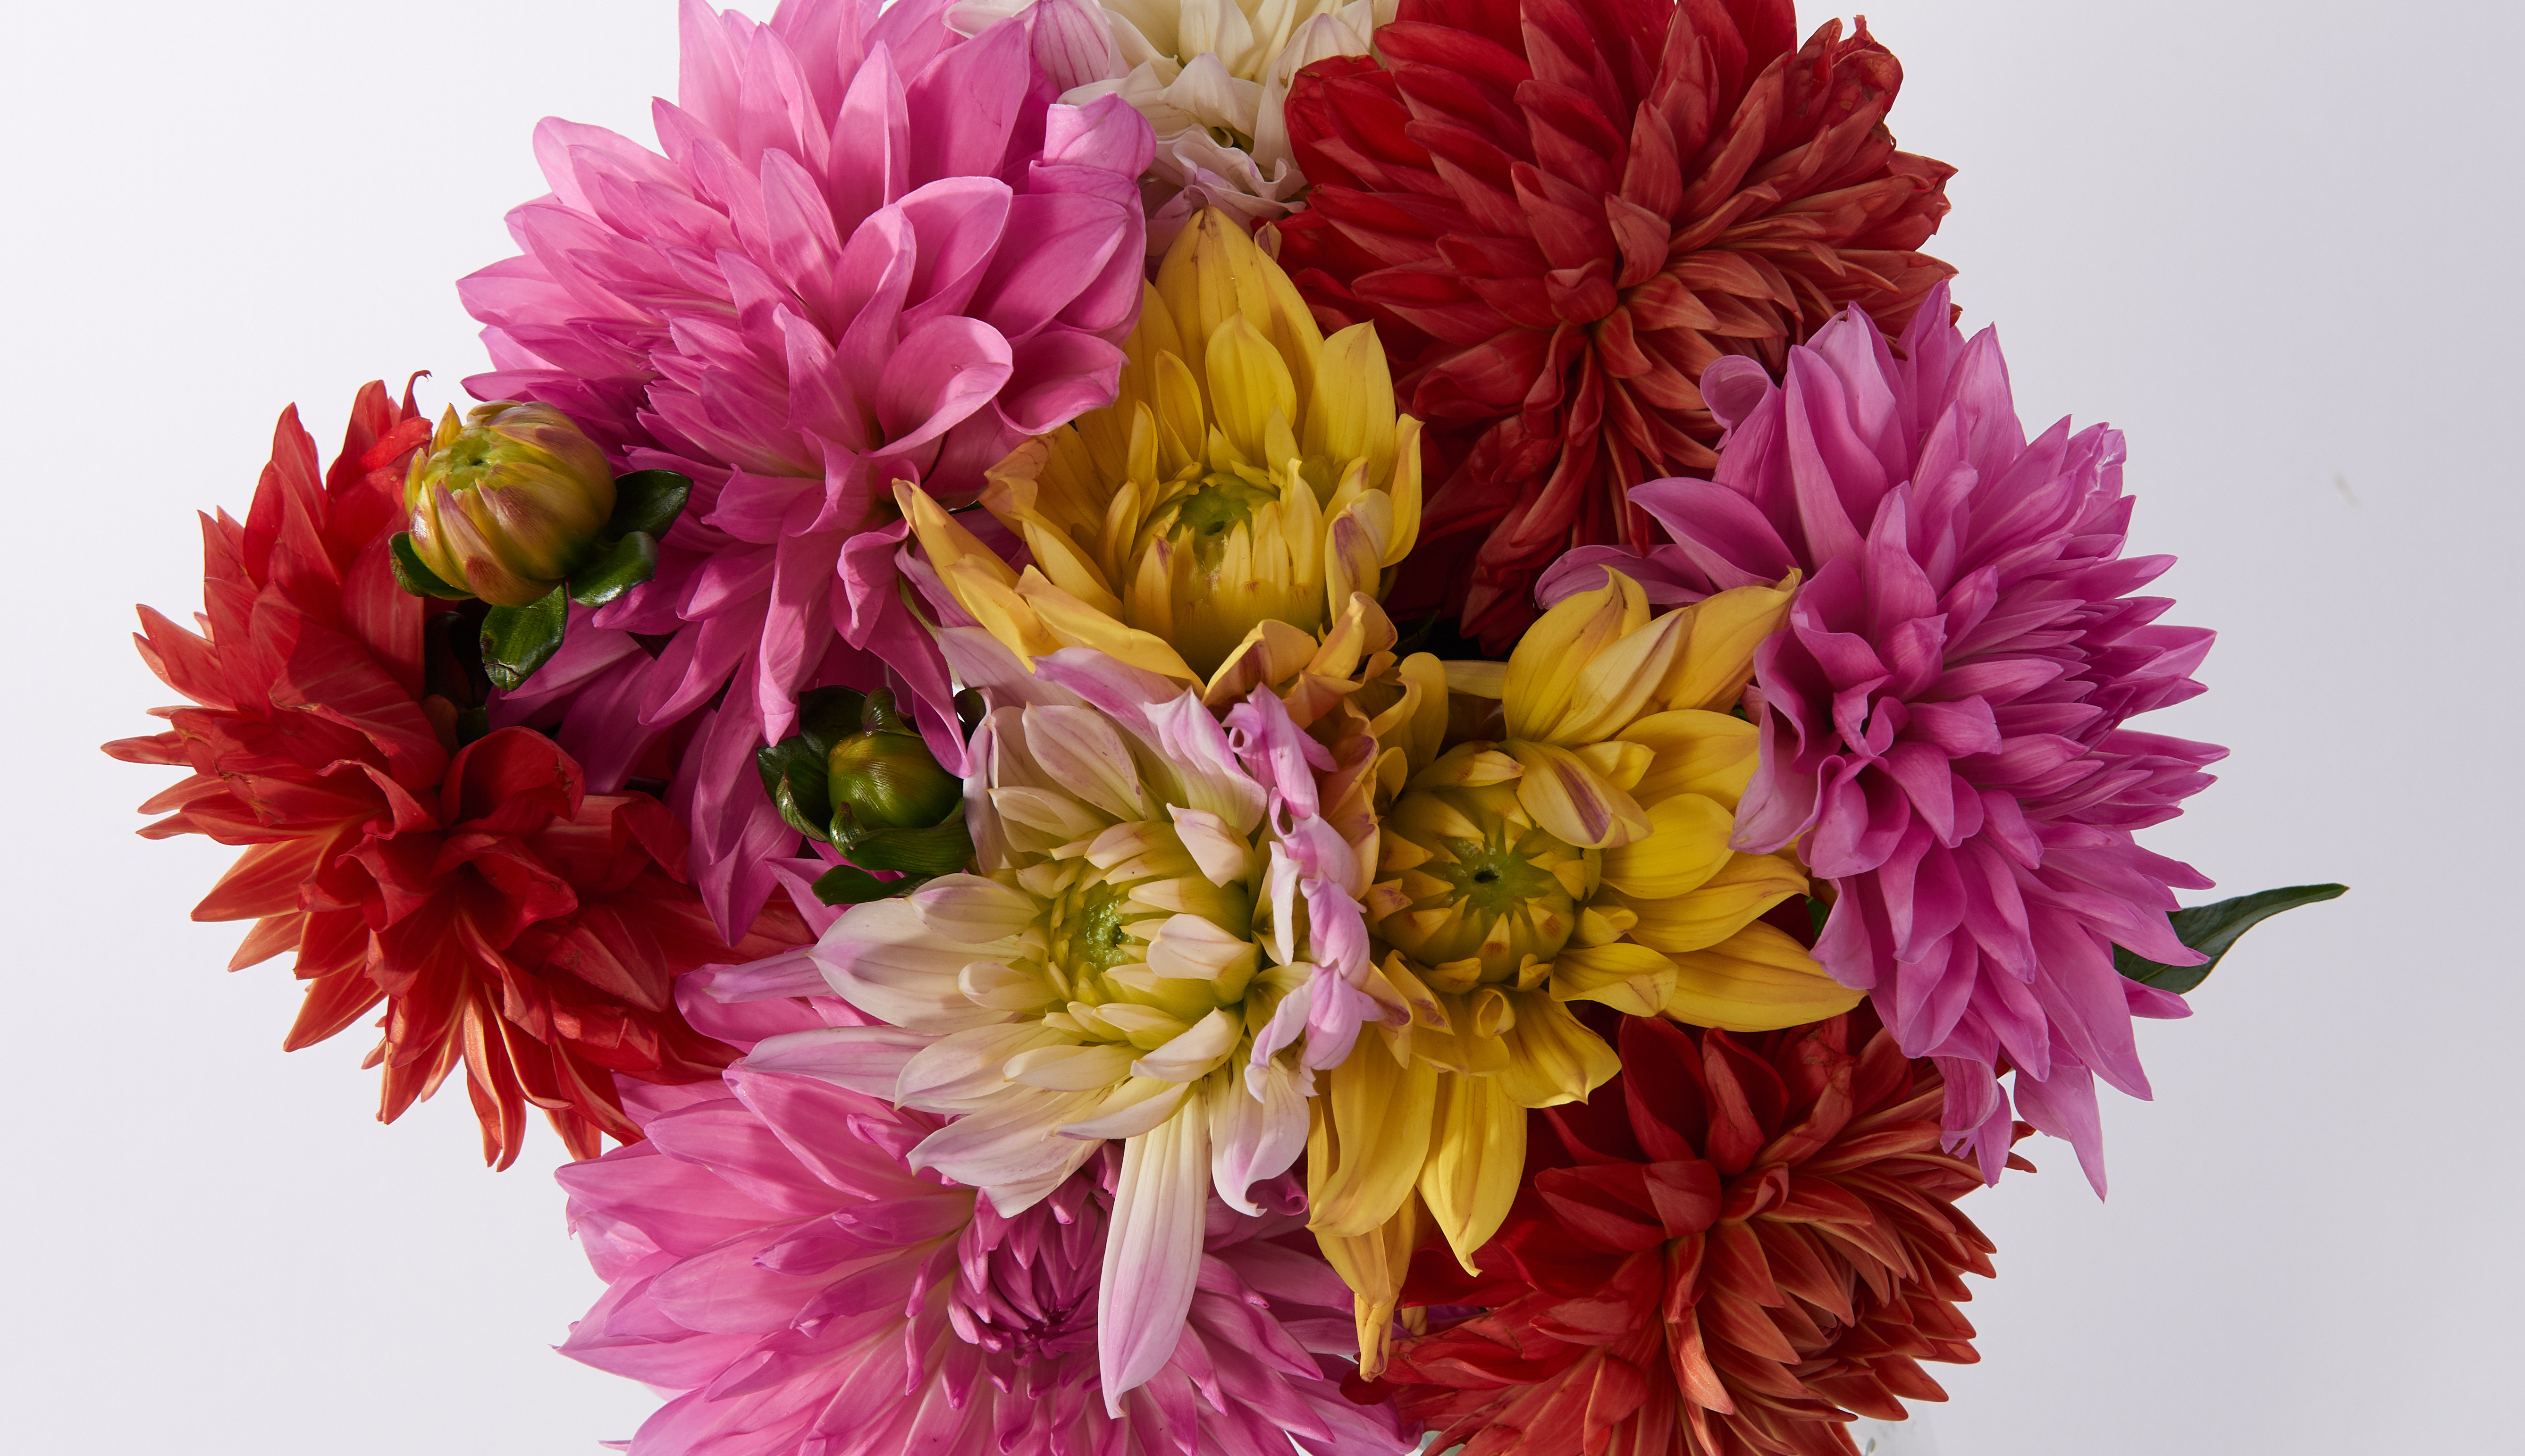 Close up of a dahlia bouquet with multicolored dahlias